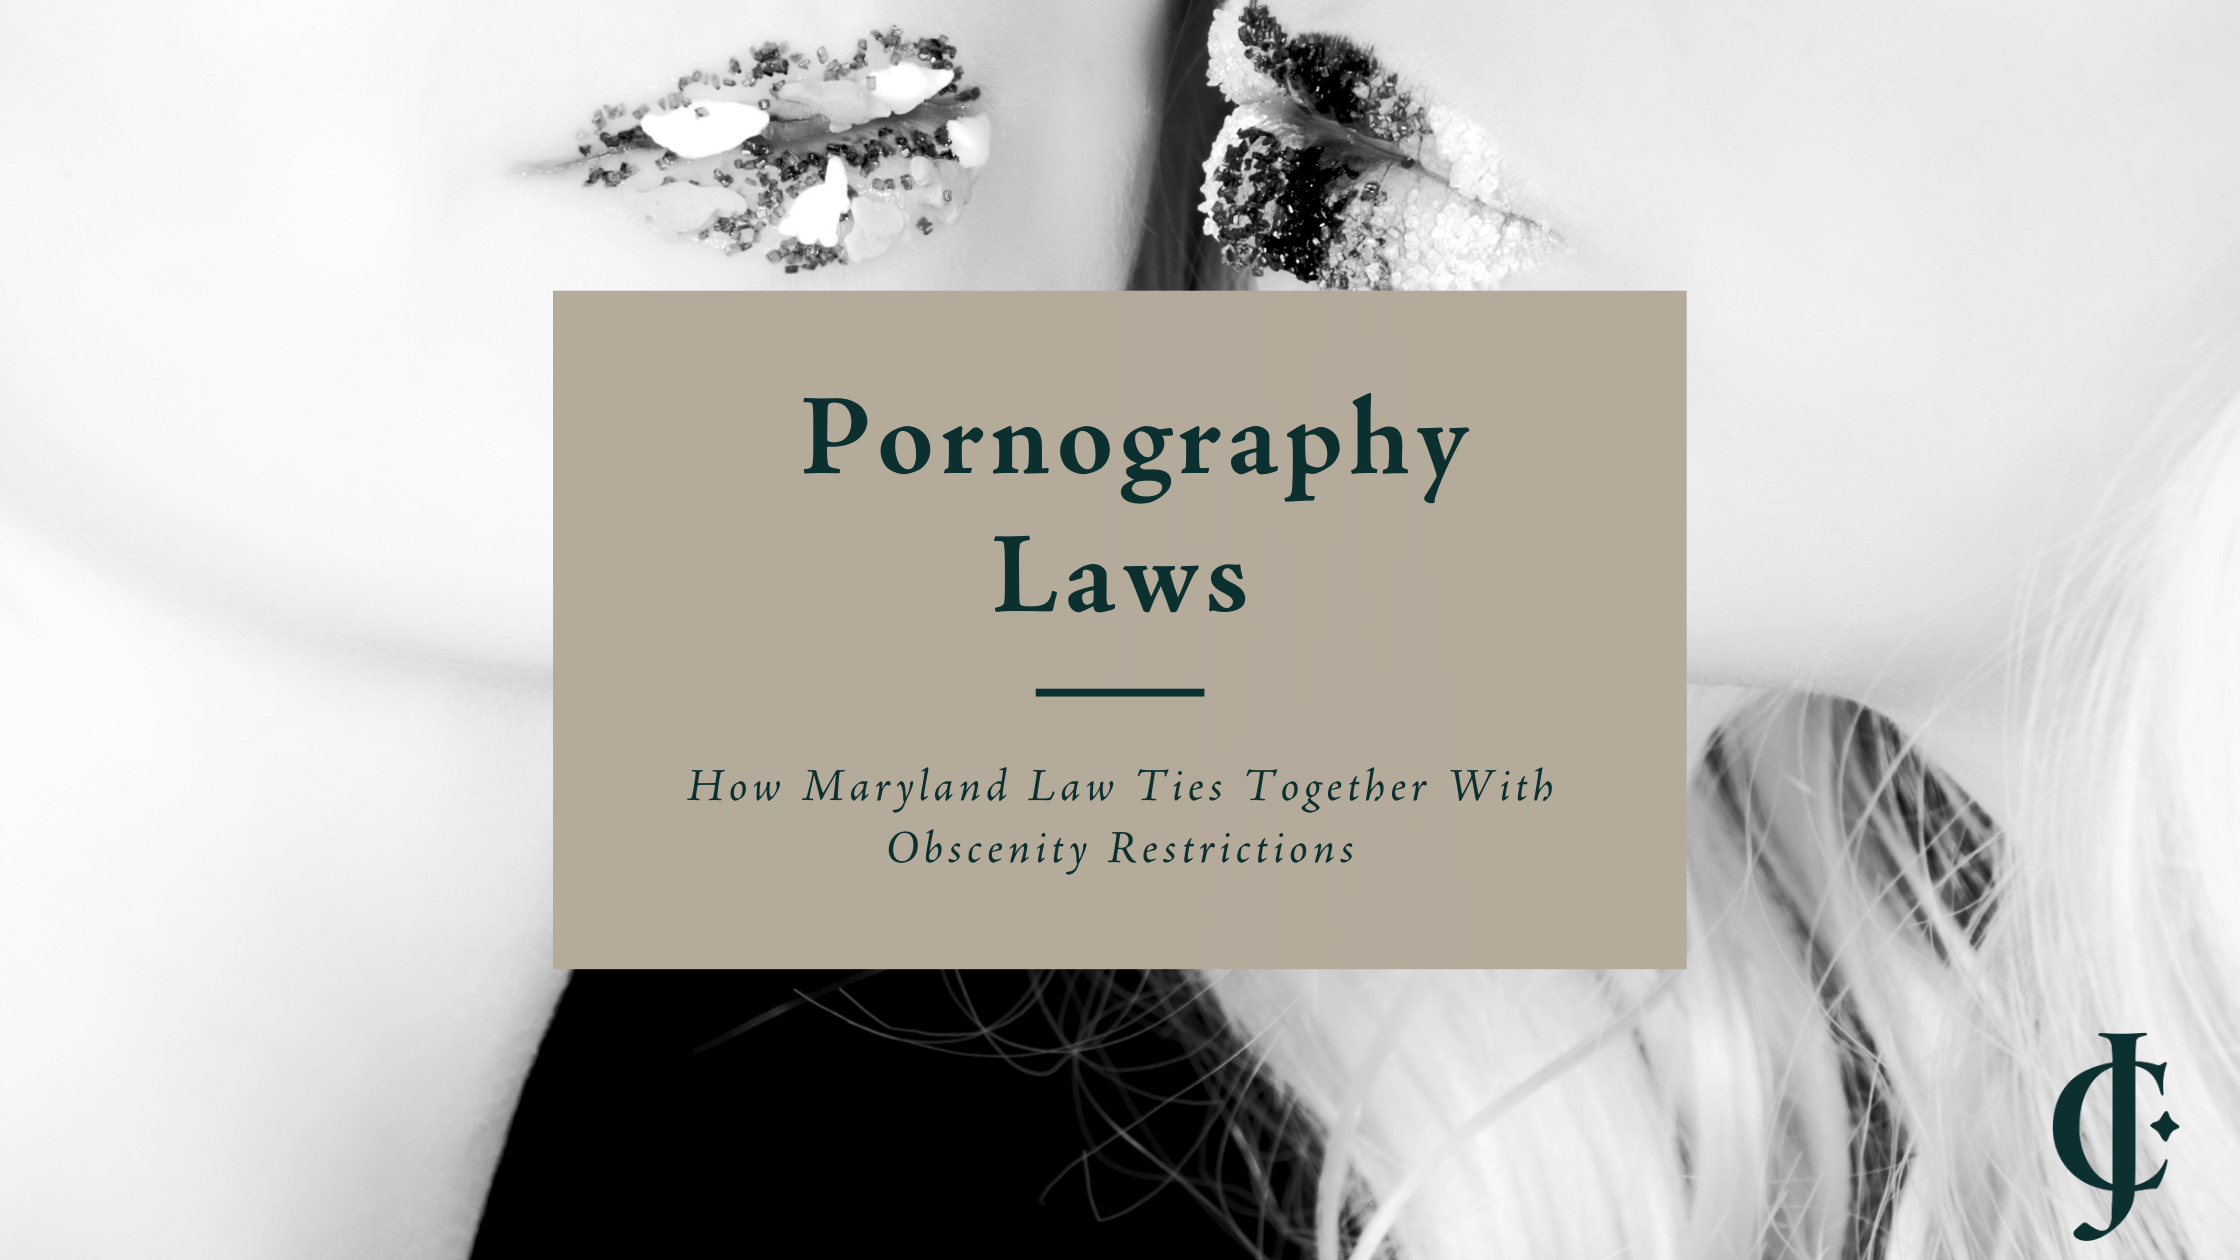 Pornography laws